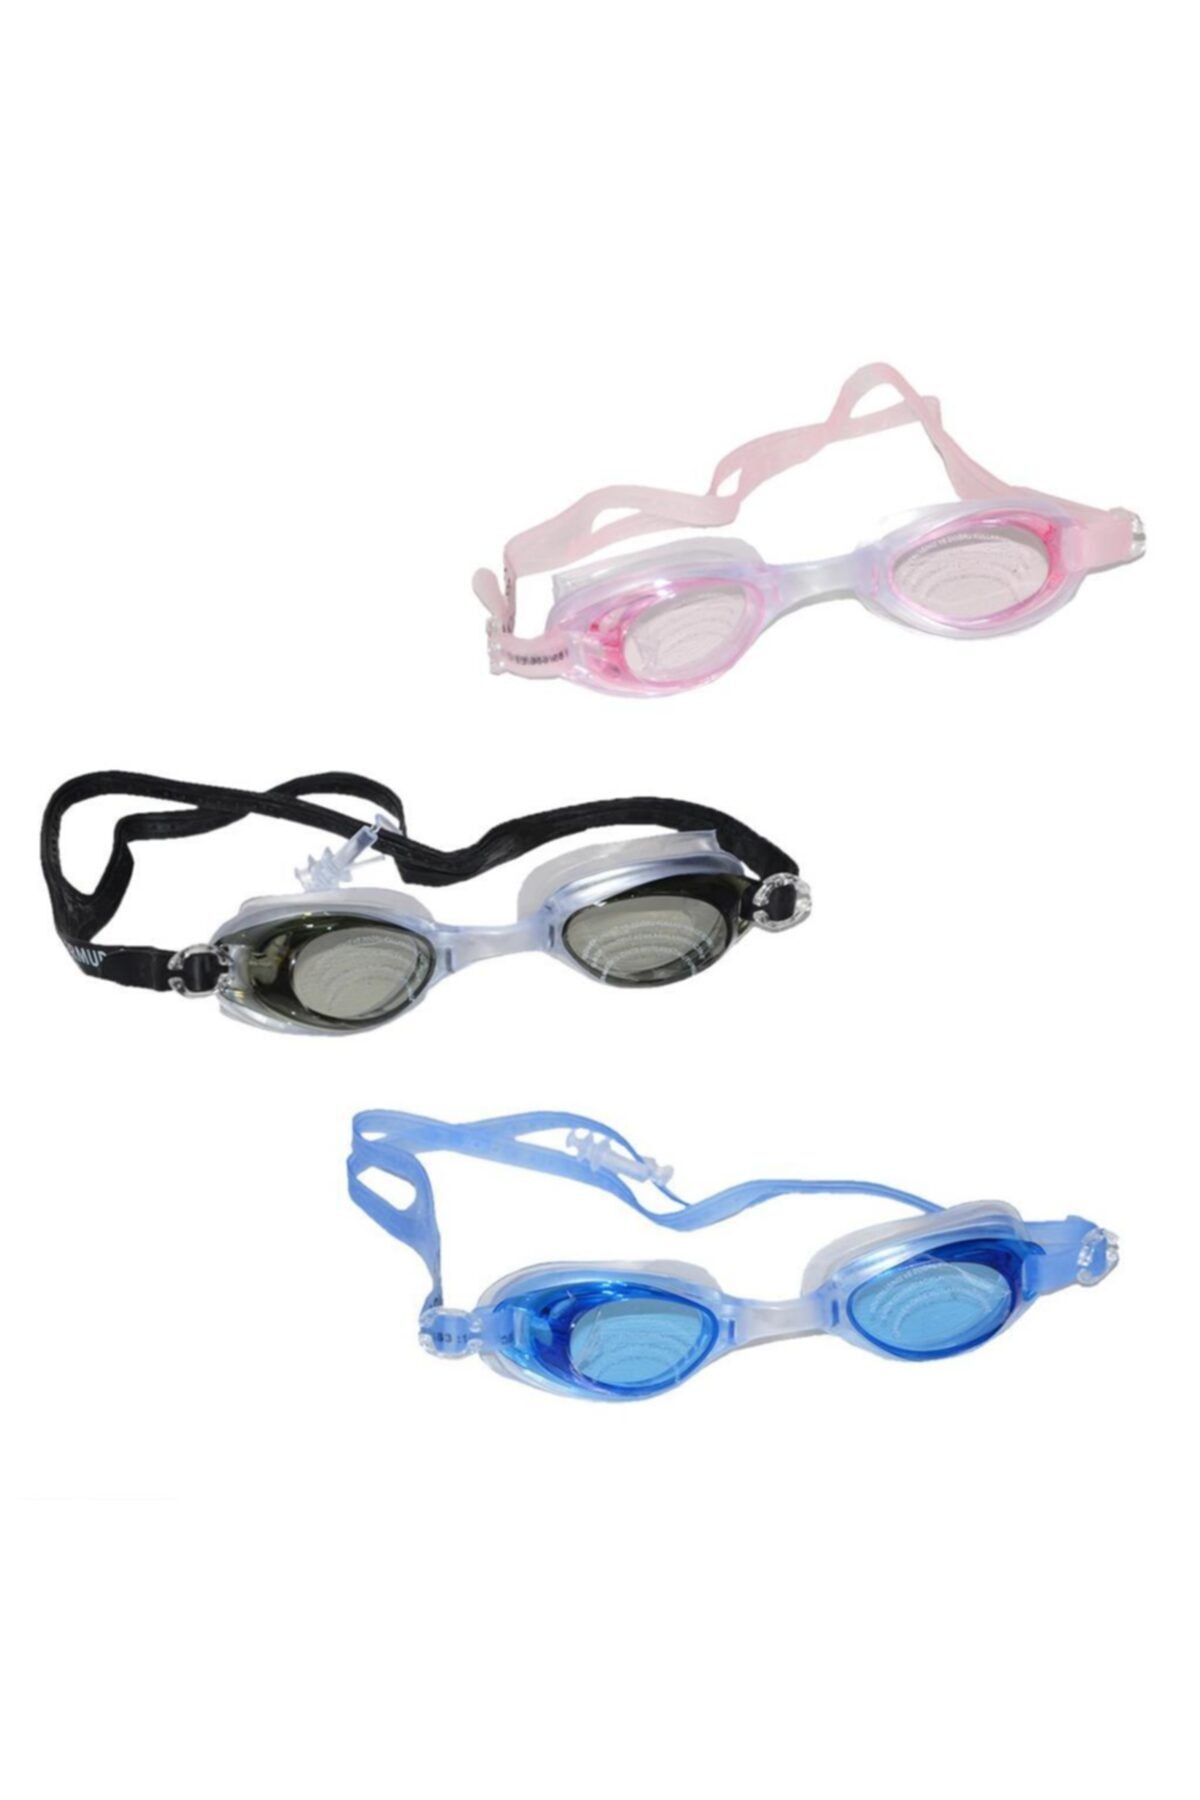 BERMUDA Yüzücü Gözlüğü Silikon Şeffaf Taşıma Çantalı + Kulaklık Hediye